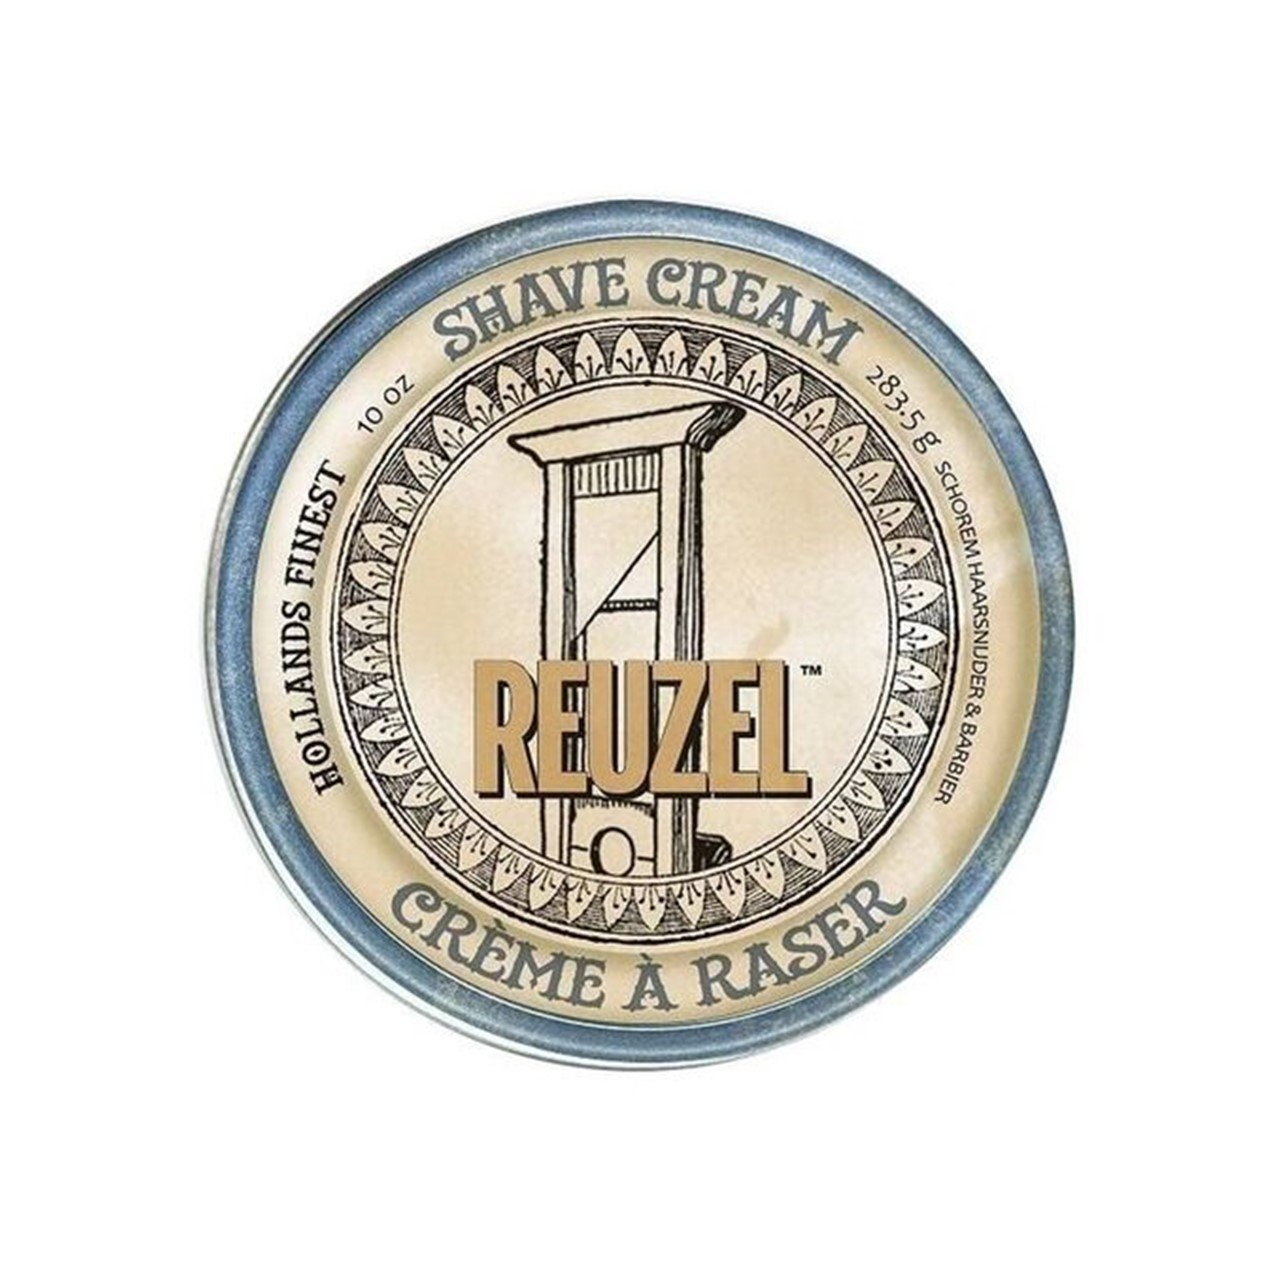 Reuzel Shave Cream 283.5g (10.0 oz)